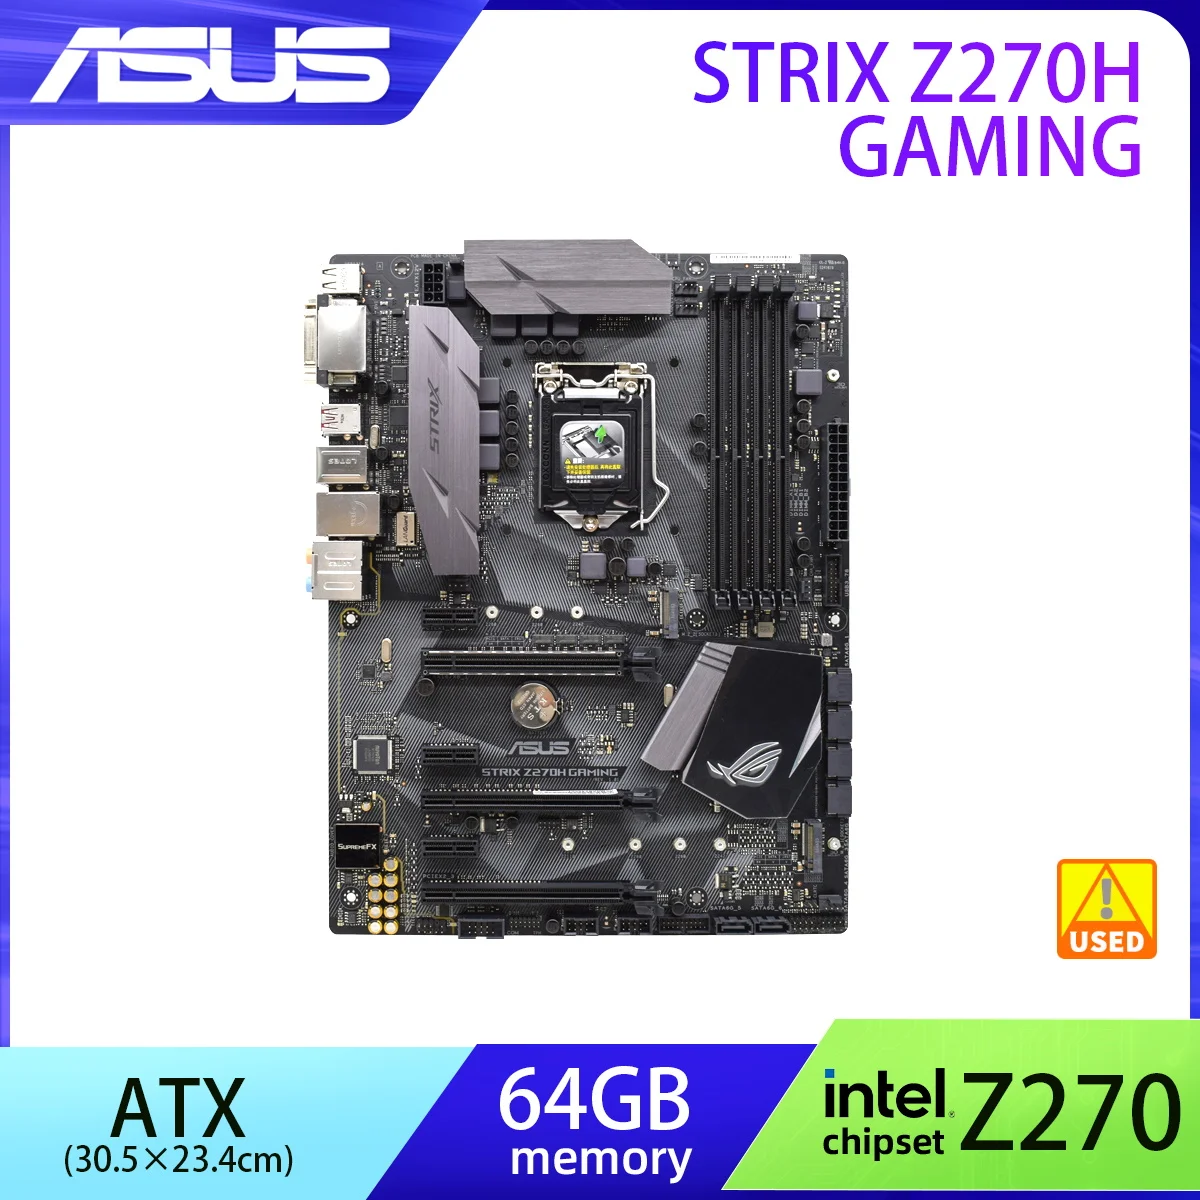 Z270 Motherboard ASUS ROG STRIX Z270H GAMING LGA 1151 Motherboard DDR4 Intel Z270 64GB PCI-E 3.0 M. 2 SATA 3 USB3.1Core I3-6300